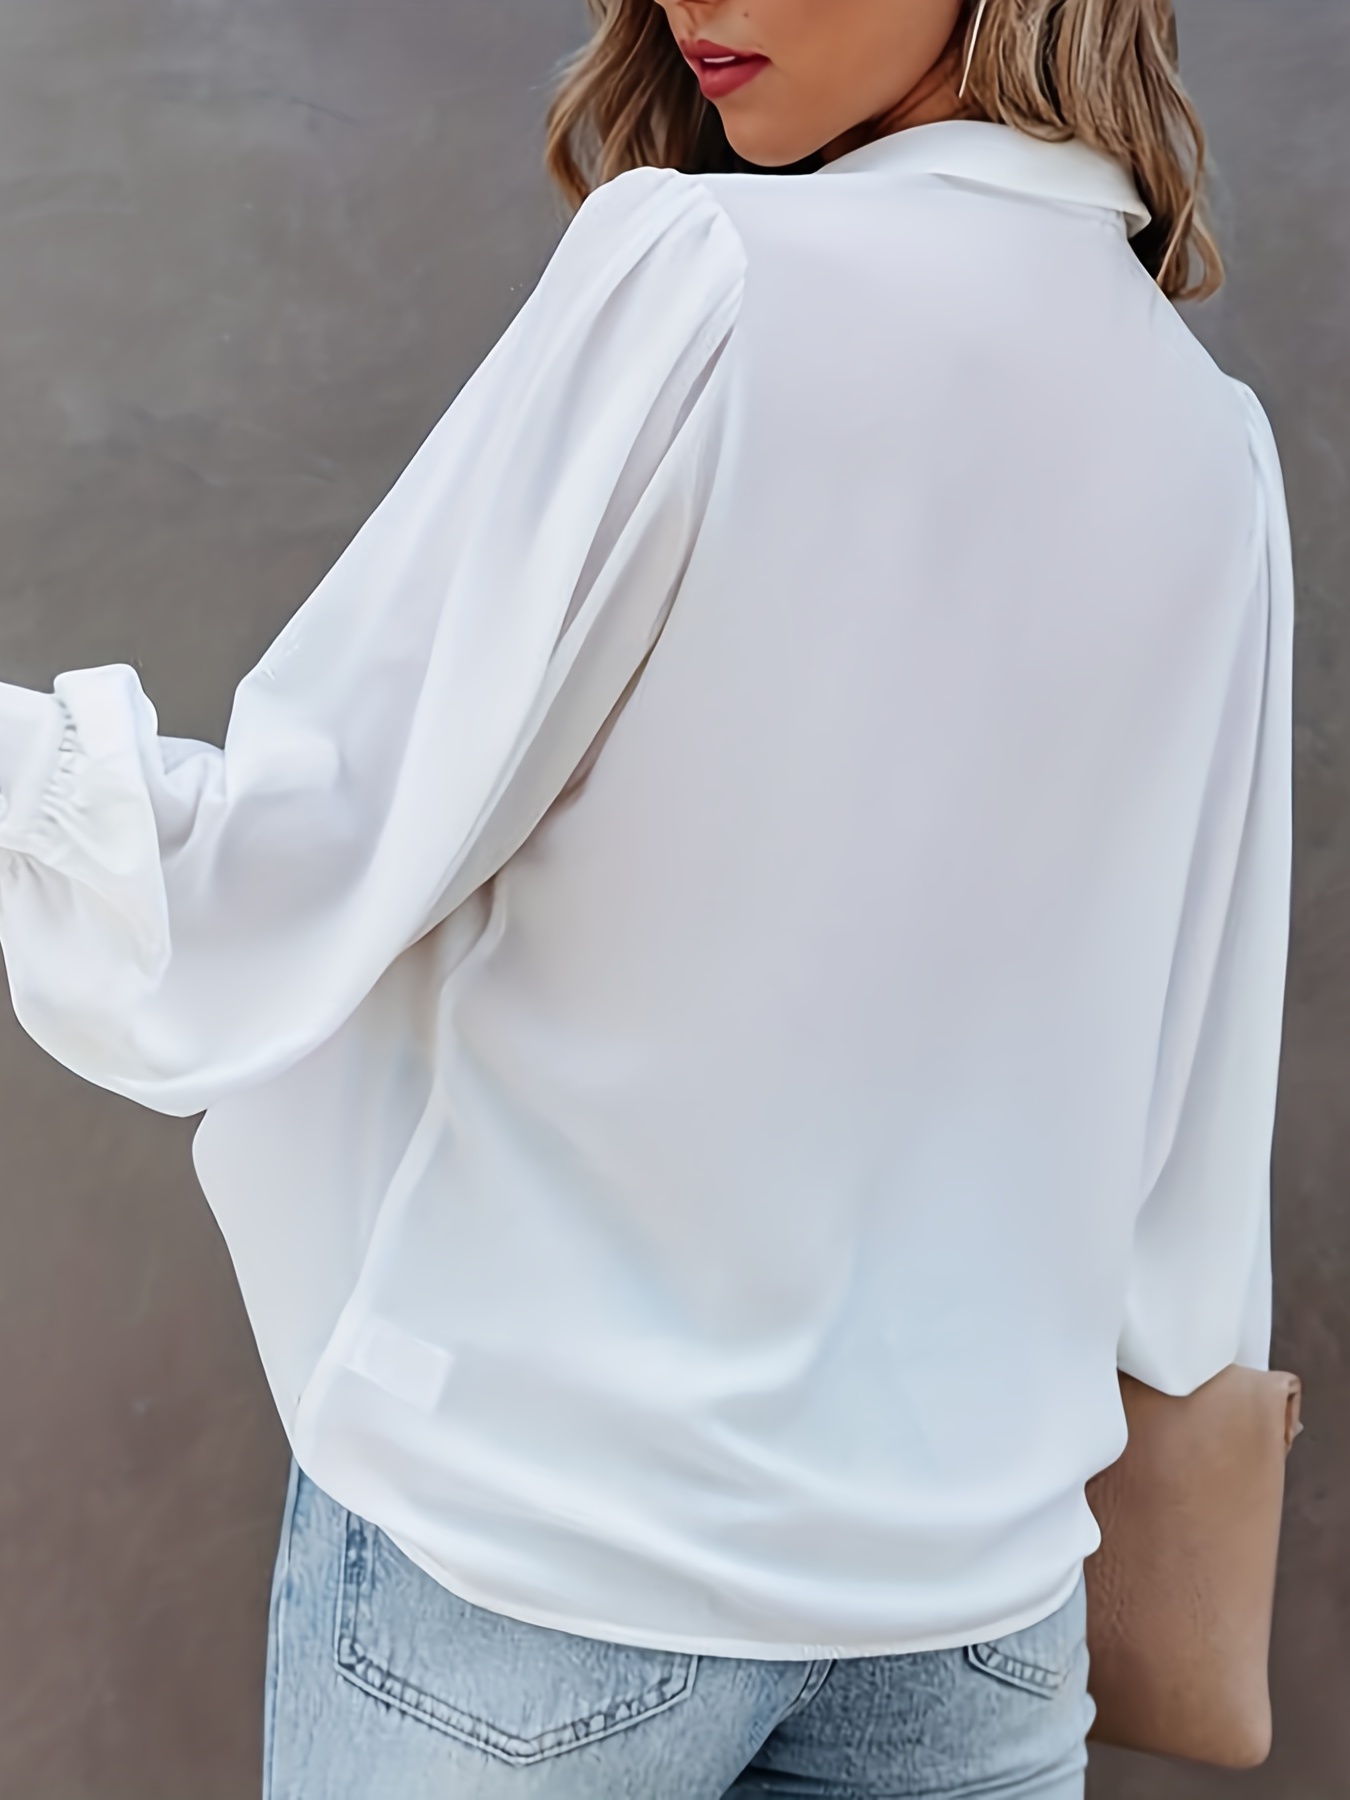 Camisa De Manga Larga, Blusa Informal Con Botones Para Primavera Y